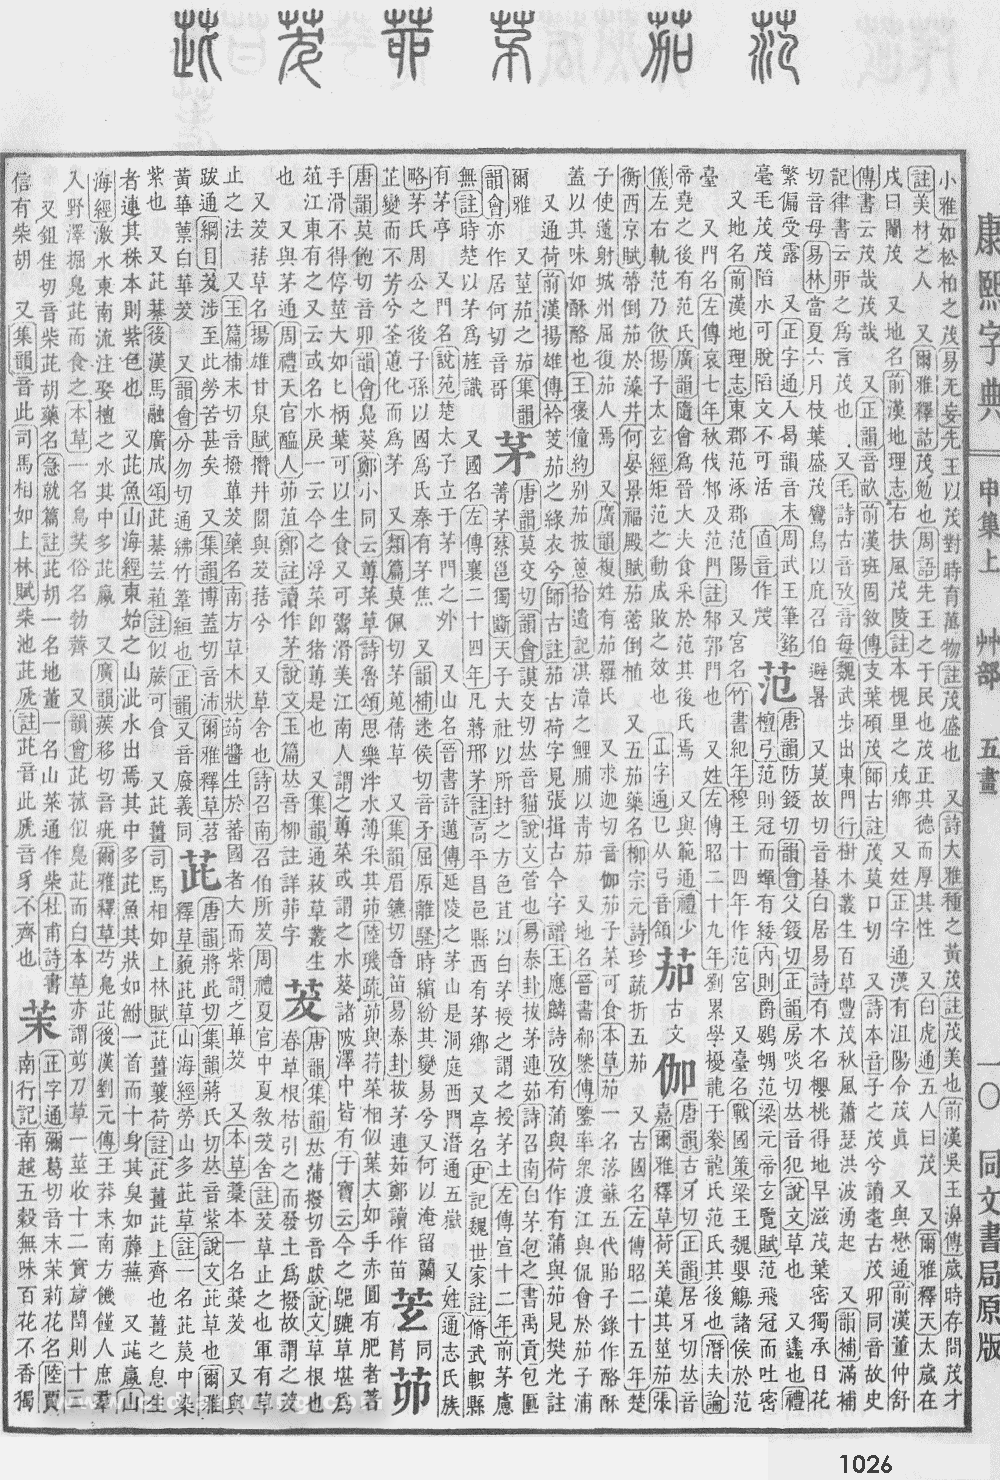 康熙字典掃描版第1026頁